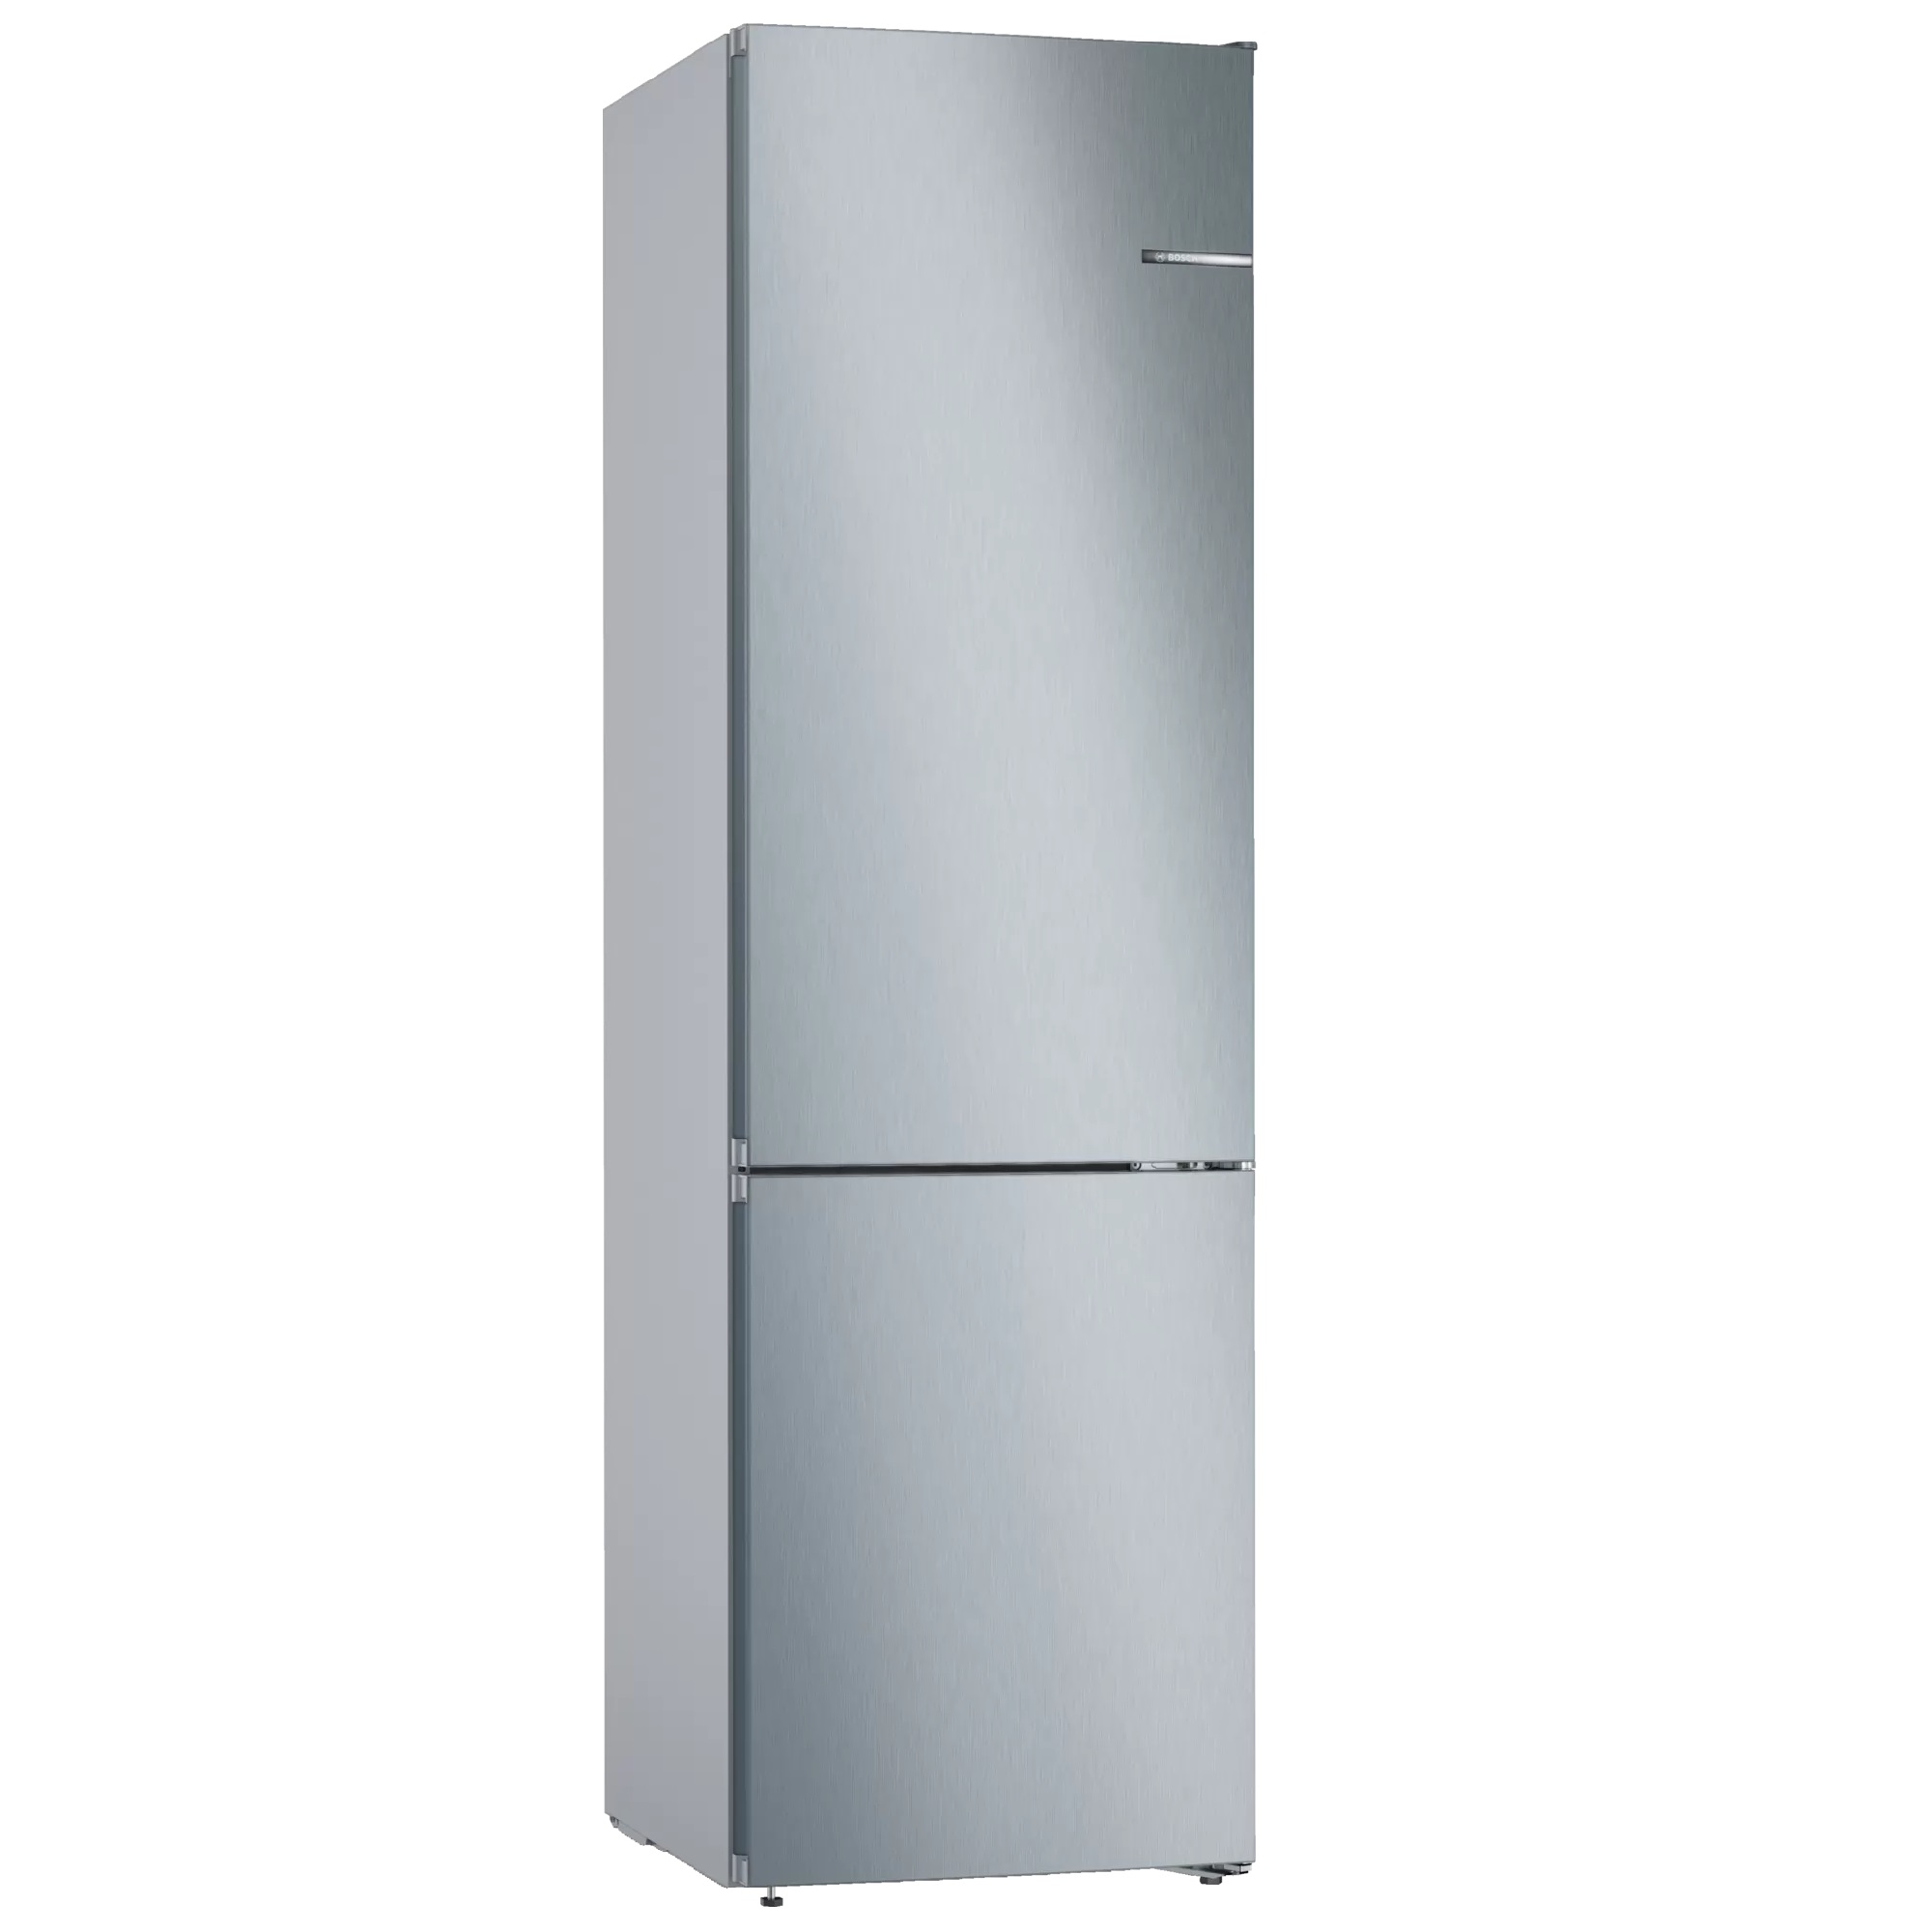 Купить холодильник в спб ноу фрост двухкамерный. Холодильник Bosch kgn39vl25r. Холодильник Bosch kgn39xi27r. Холодильник Bosch serie 4 VITAFRESH. Холодильник Bosch serie 4 kgn39vl24r.